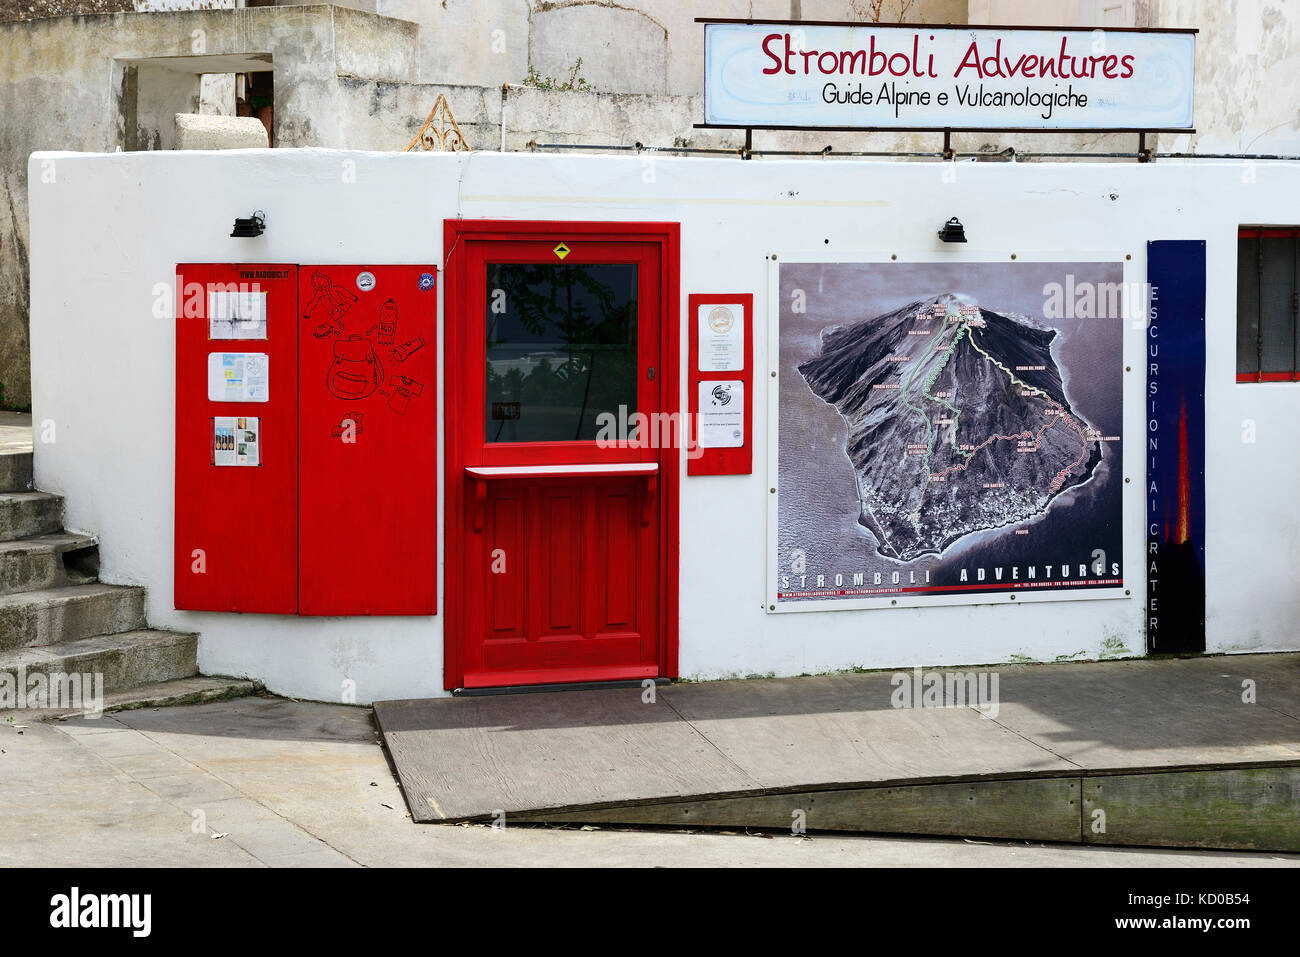 Tourguide-office aventures, île de Stromboli Stromboli, Lipari, Italie Banque D'Images